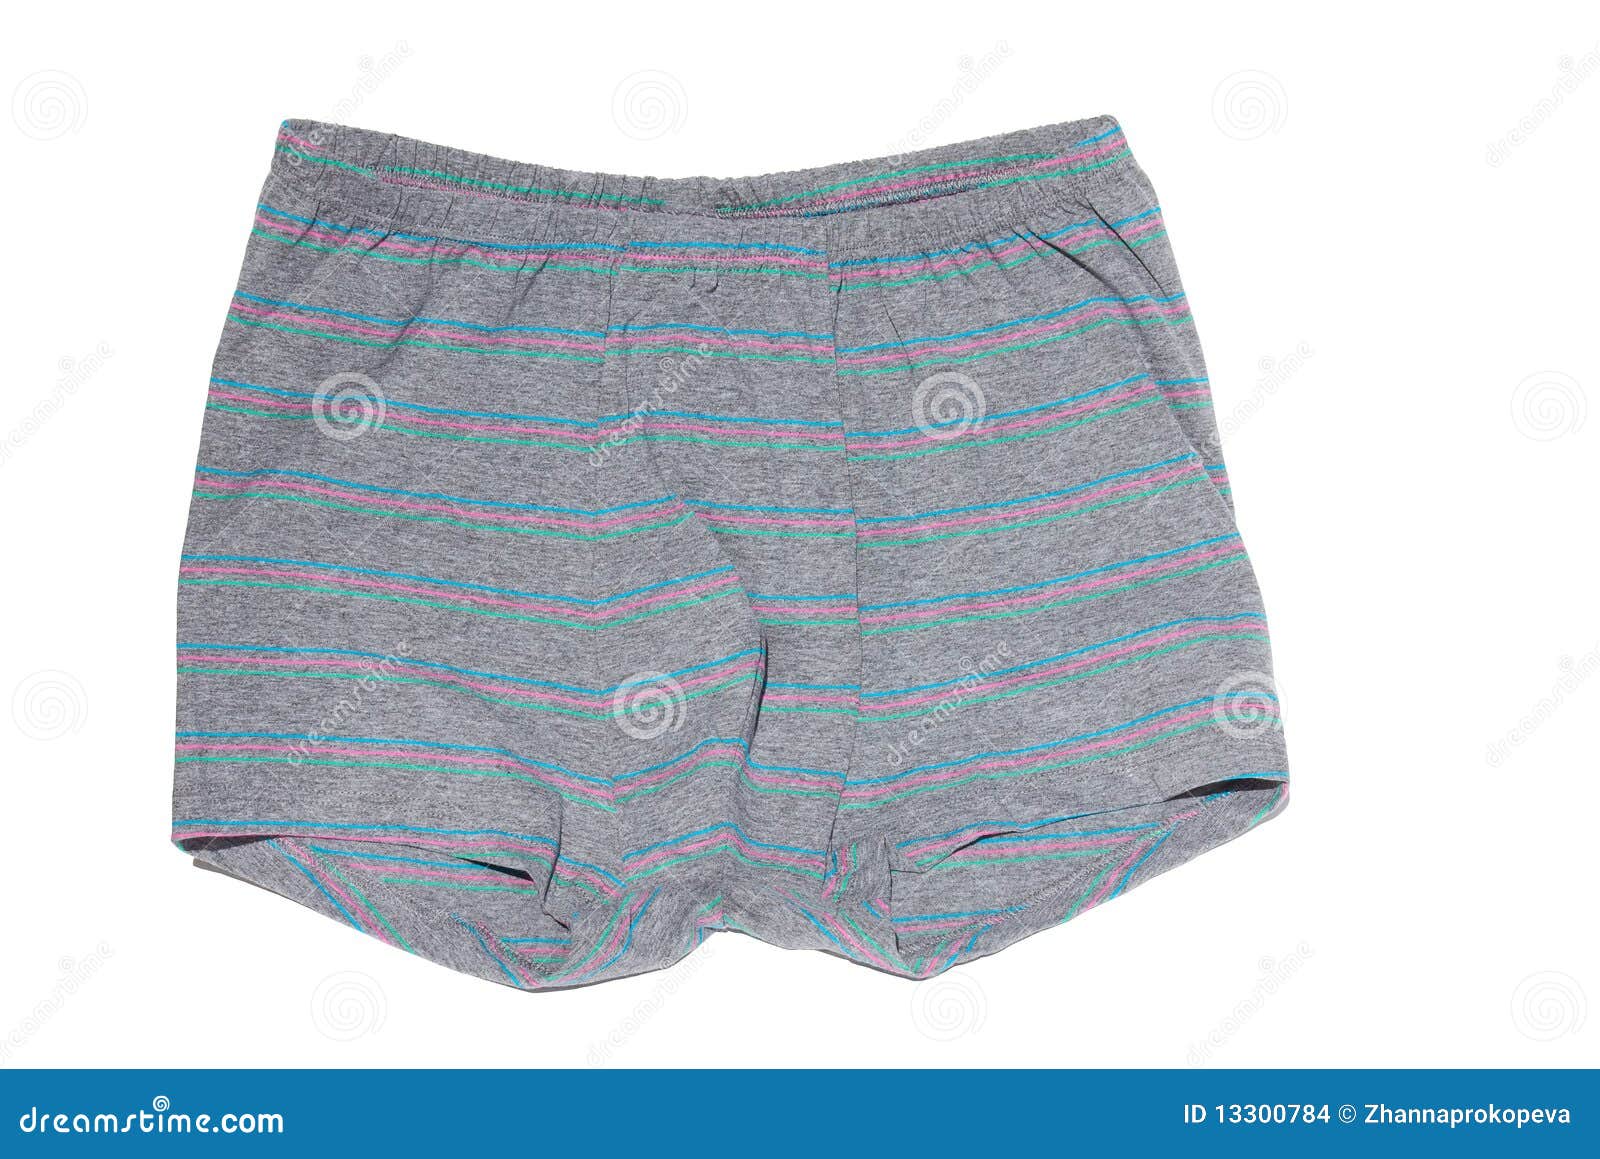 Men s shorts stock photo. Image of background, beautiful - 13300784